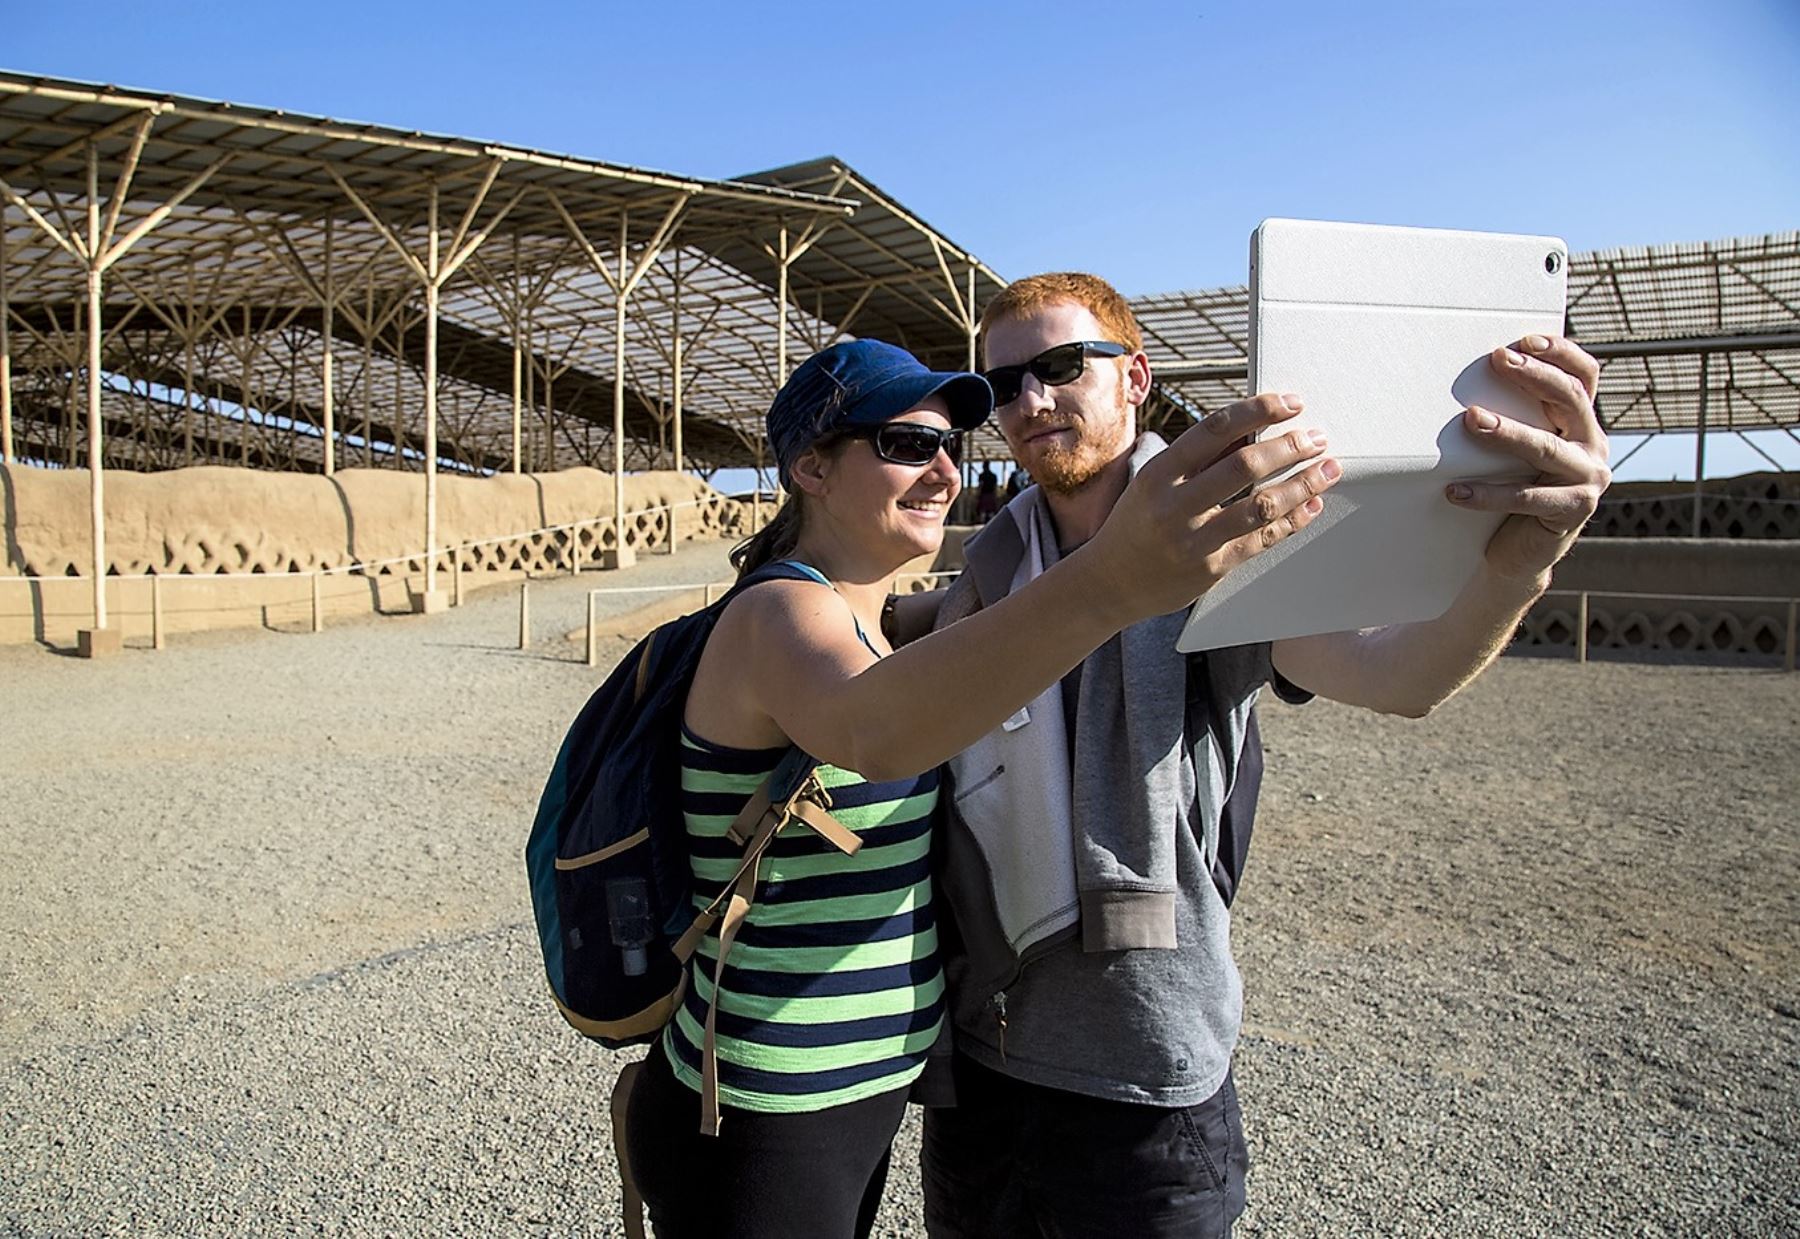 Turistas de Estados Unidos encabezan la lista de viajeros extranjeros que visitan complejo arqueológico Chan Chan, en Trujillo. ANDINA